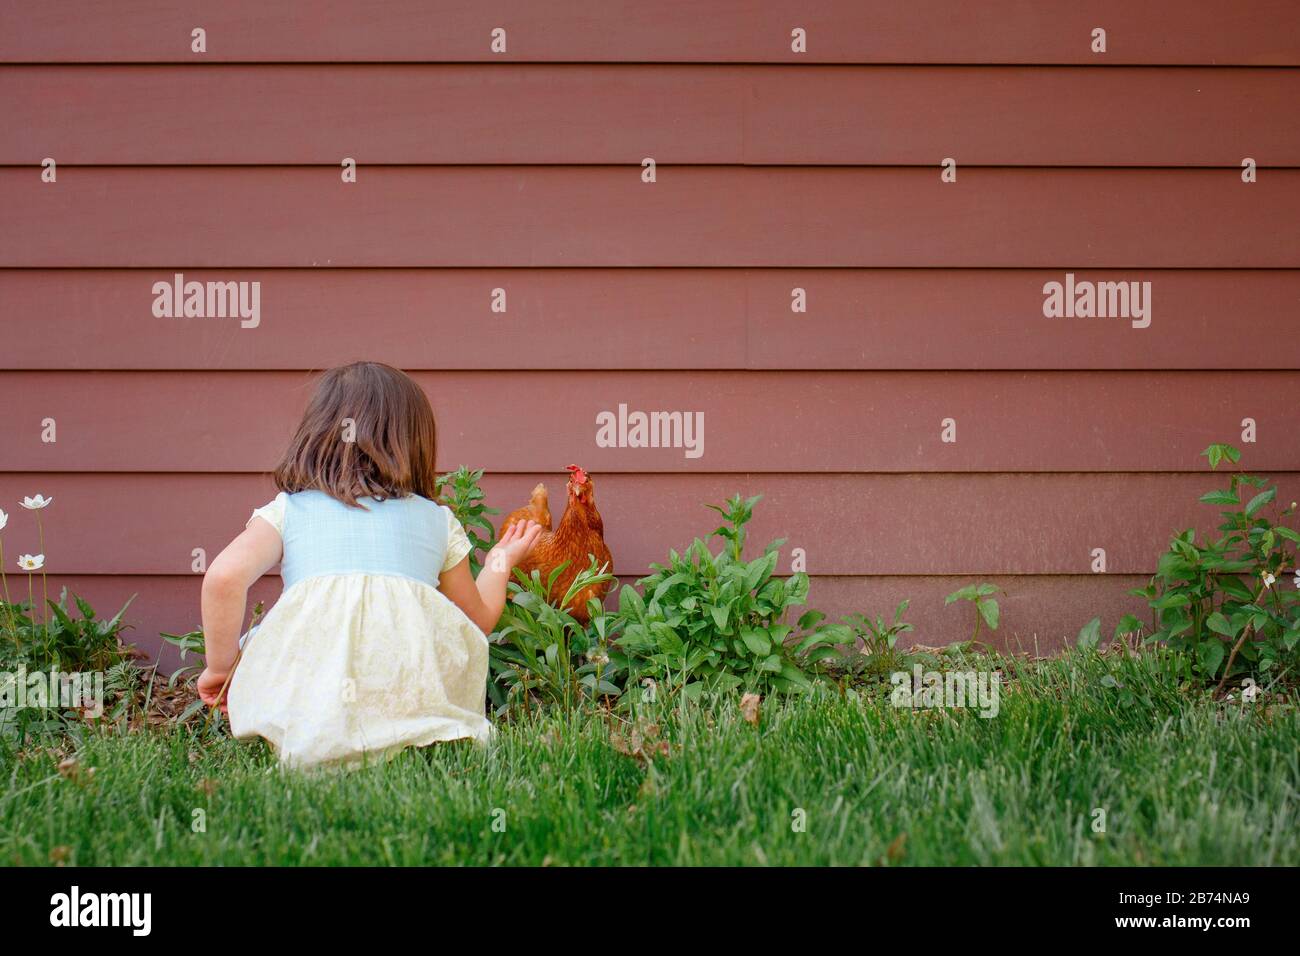 Una niña se sienta en un jardín en verano alcanzando un pollo rojo Foto de stock